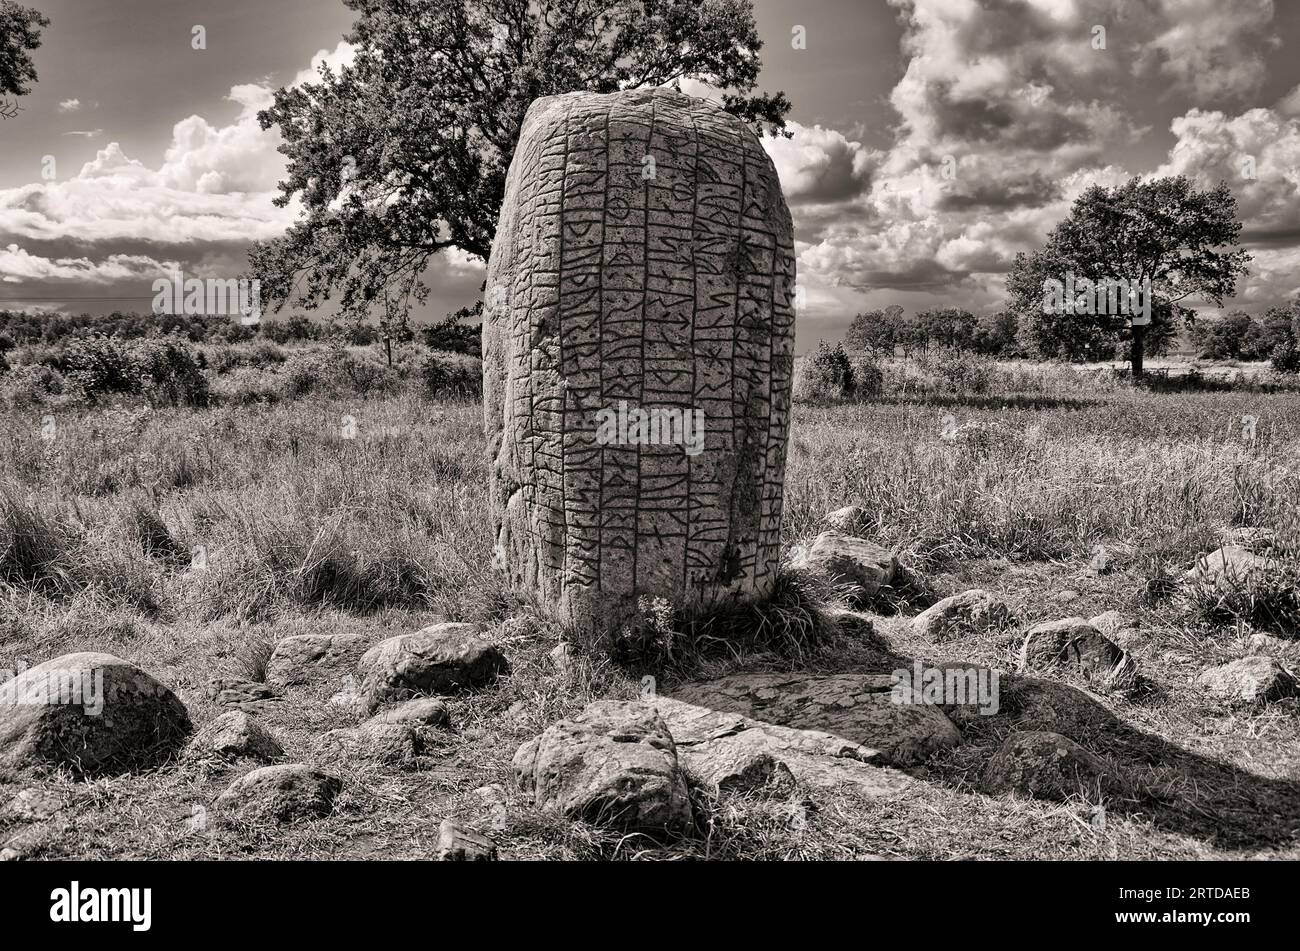 Ancienne pierre de Karlevi, également appelée pierre de Karlevi, à l'extérieur du village de Färjestaden, île de Öland, comté de Kalmar, Suède. Banque D'Images